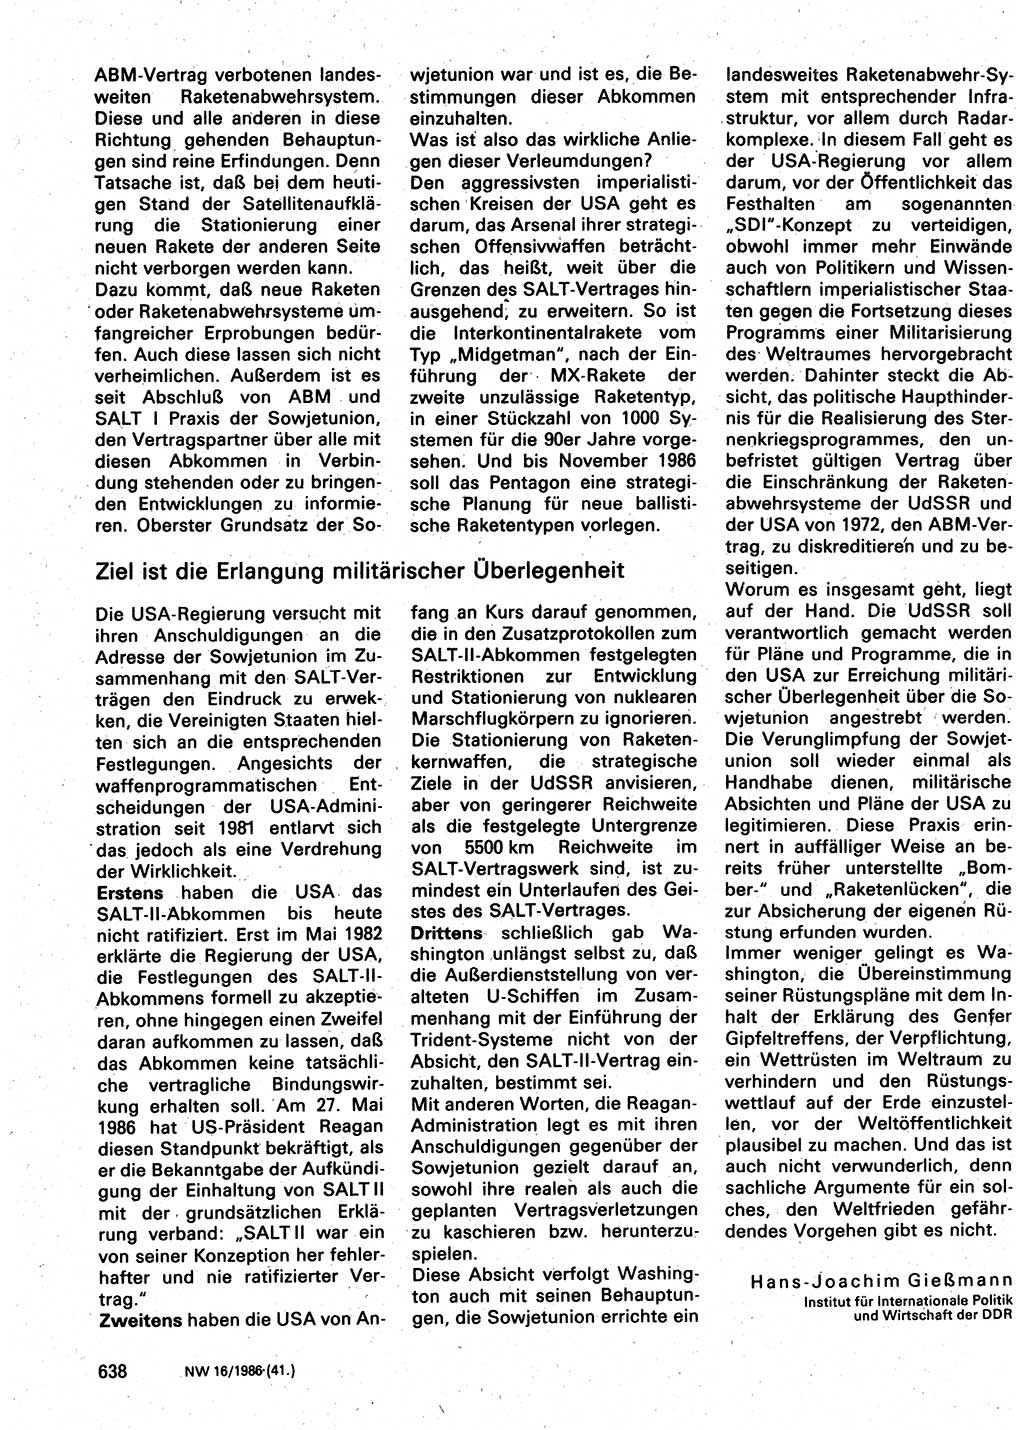 Neuer Weg (NW), Organ des Zentralkomitees (ZK) der SED (Sozialistische Einheitspartei Deutschlands) für Fragen des Parteilebens, 41. Jahrgang [Deutsche Demokratische Republik (DDR)] 1986, Seite 638 (NW ZK SED DDR 1986, S. 638)